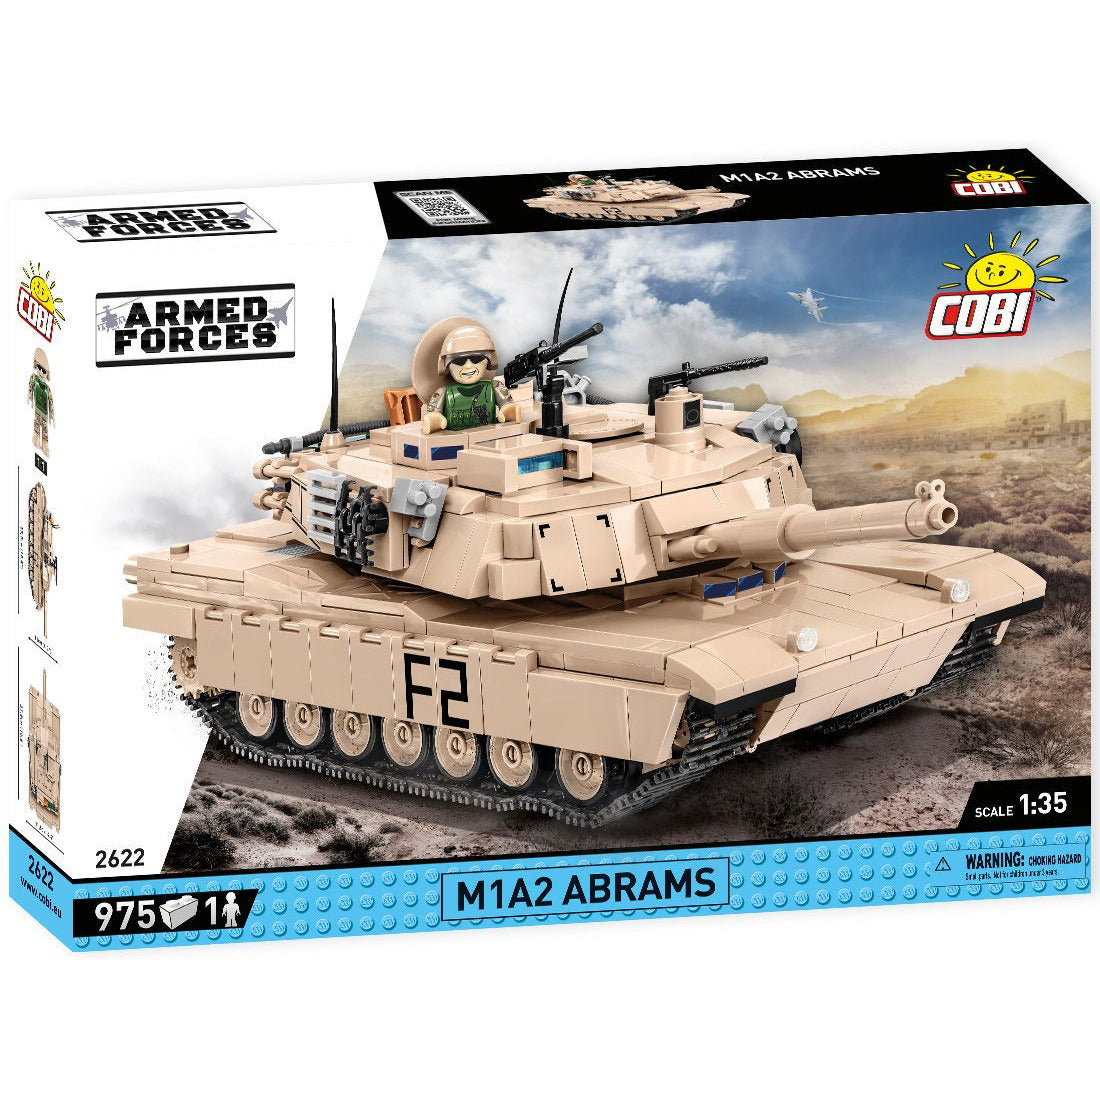 Cobi Armed Forces: 2622 M1A2 Abrams 975 PCS